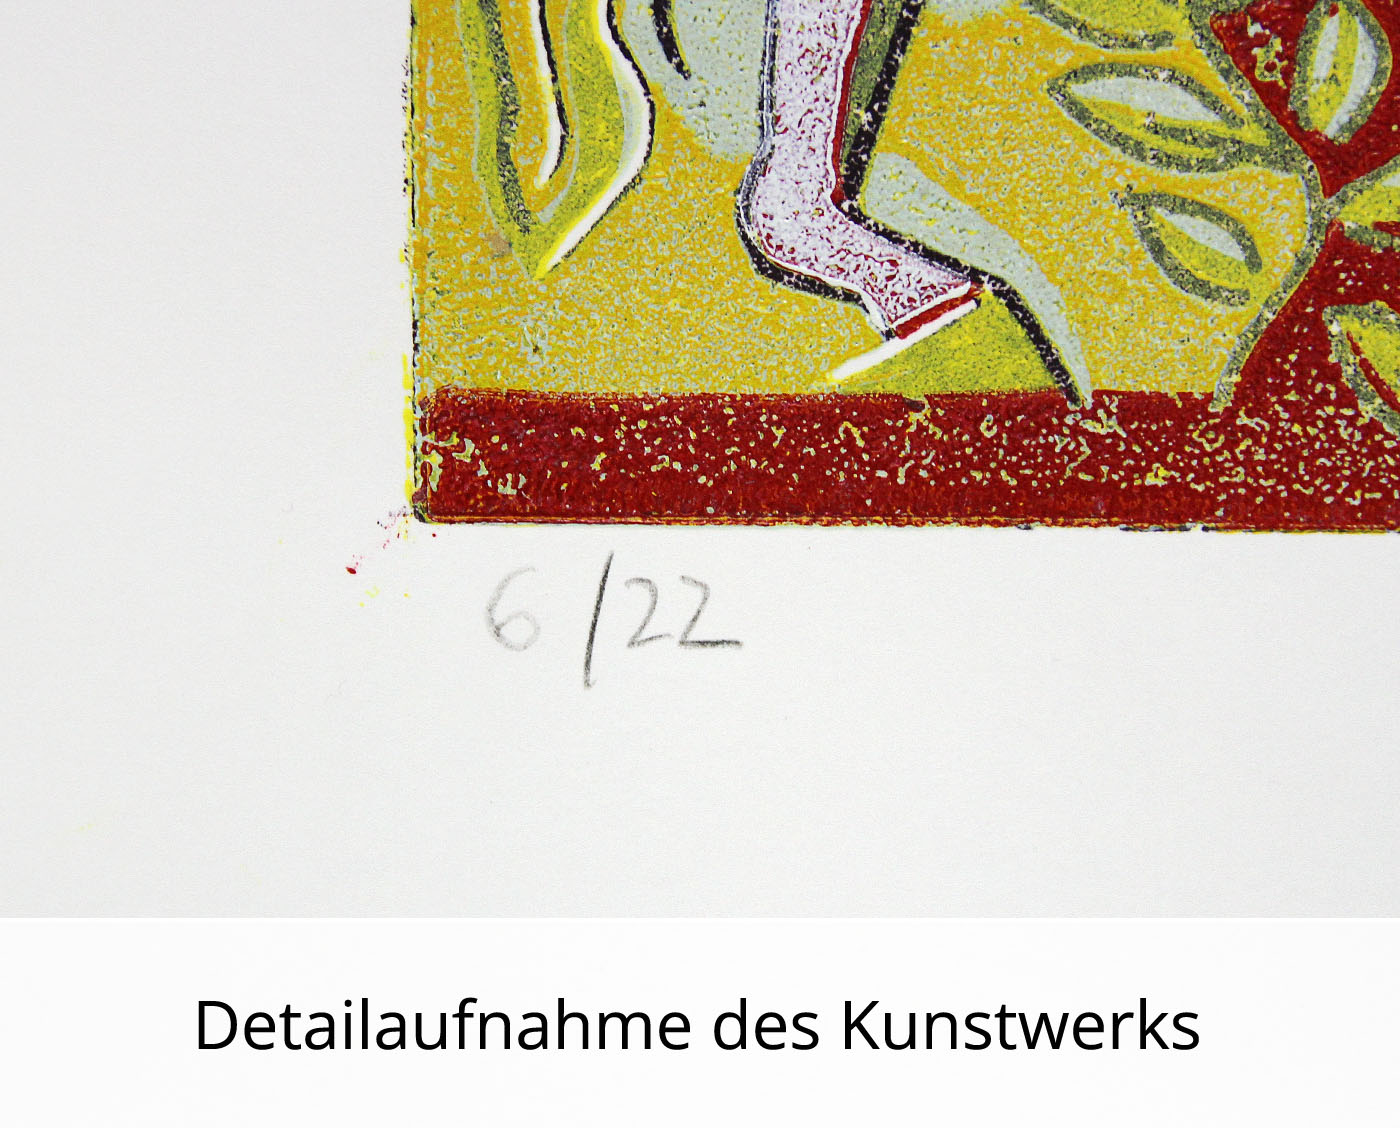 F.O. Haake: "Gemeinsam - Blatt 06/22", originale Grafik/serielles Unikat, mehrfarbiger Linoldruck